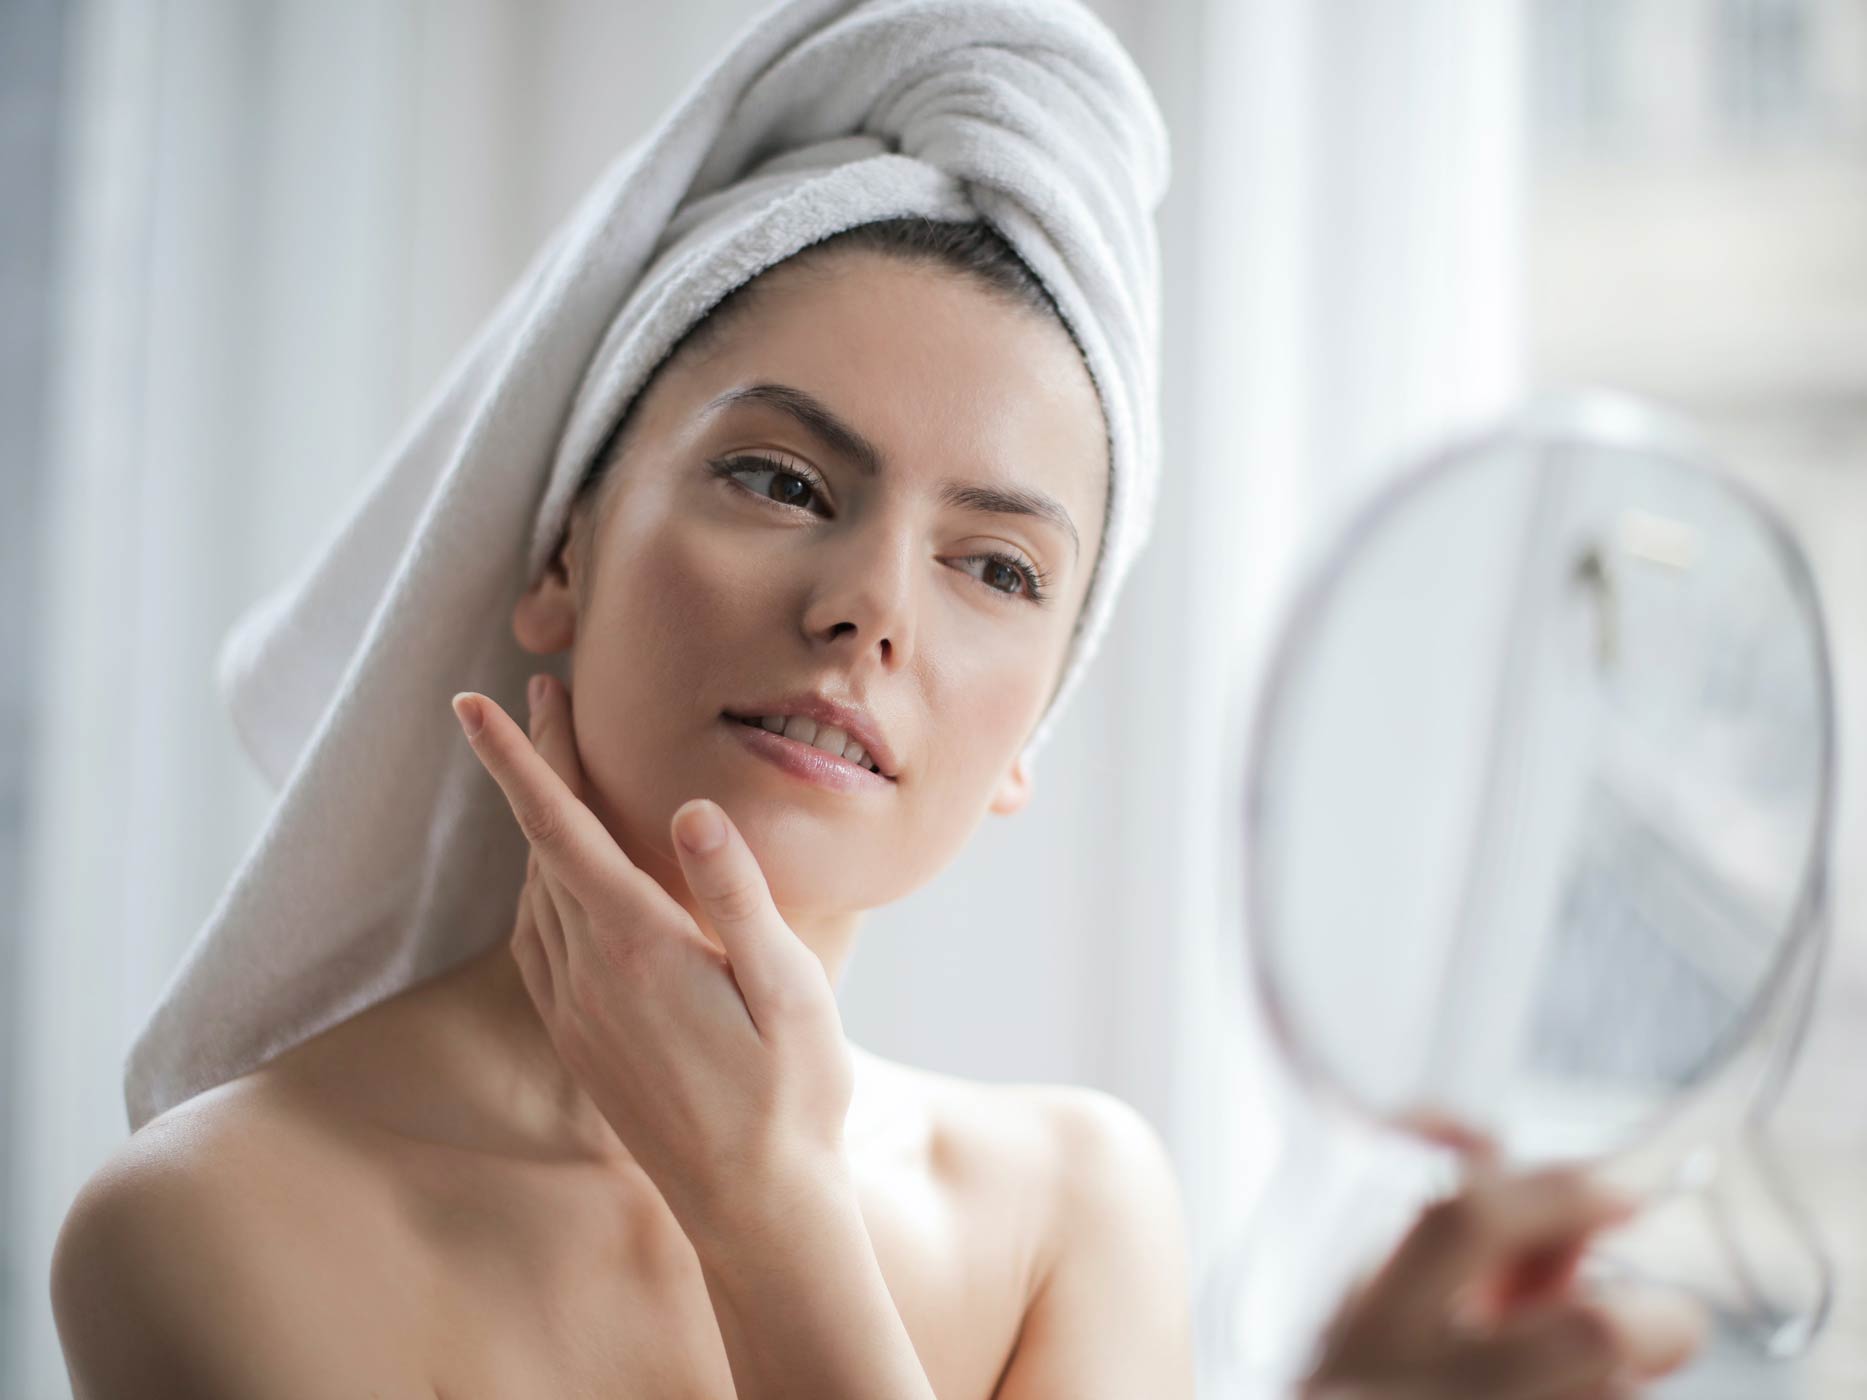 Frau trägt Handtuch auf dem Kopf und betrachtet ihr Gesicht in einem Kosmetikspiegel in ihrer Hand